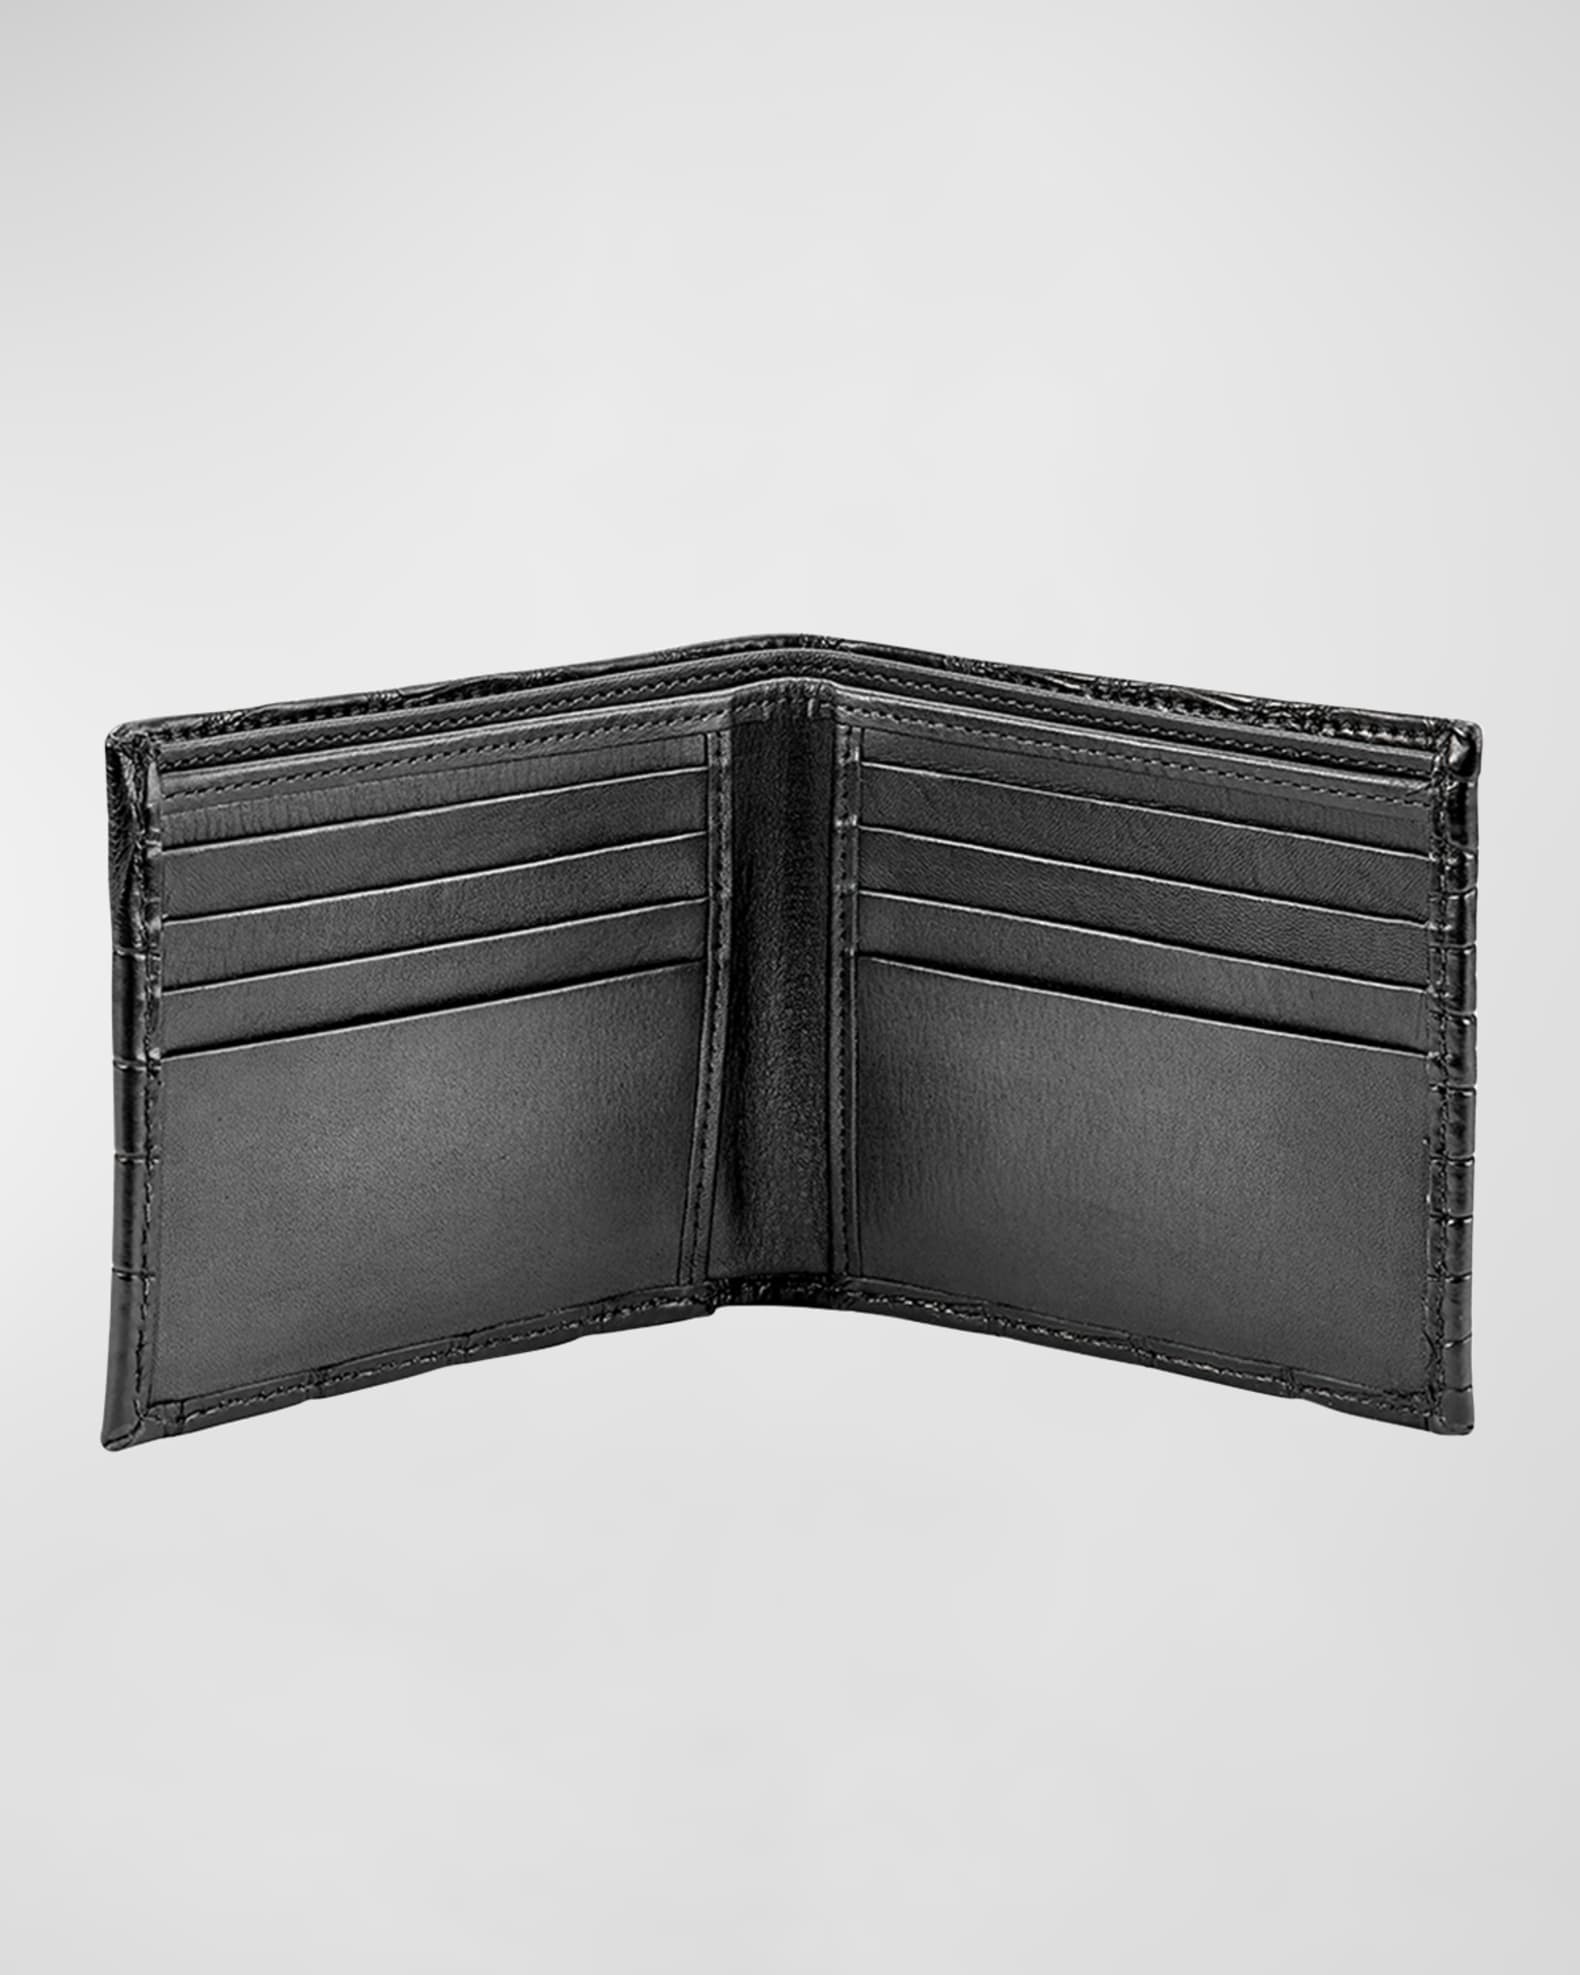 Neiman Marcus Men's Alligator Leather Wallet | Neiman Marcus